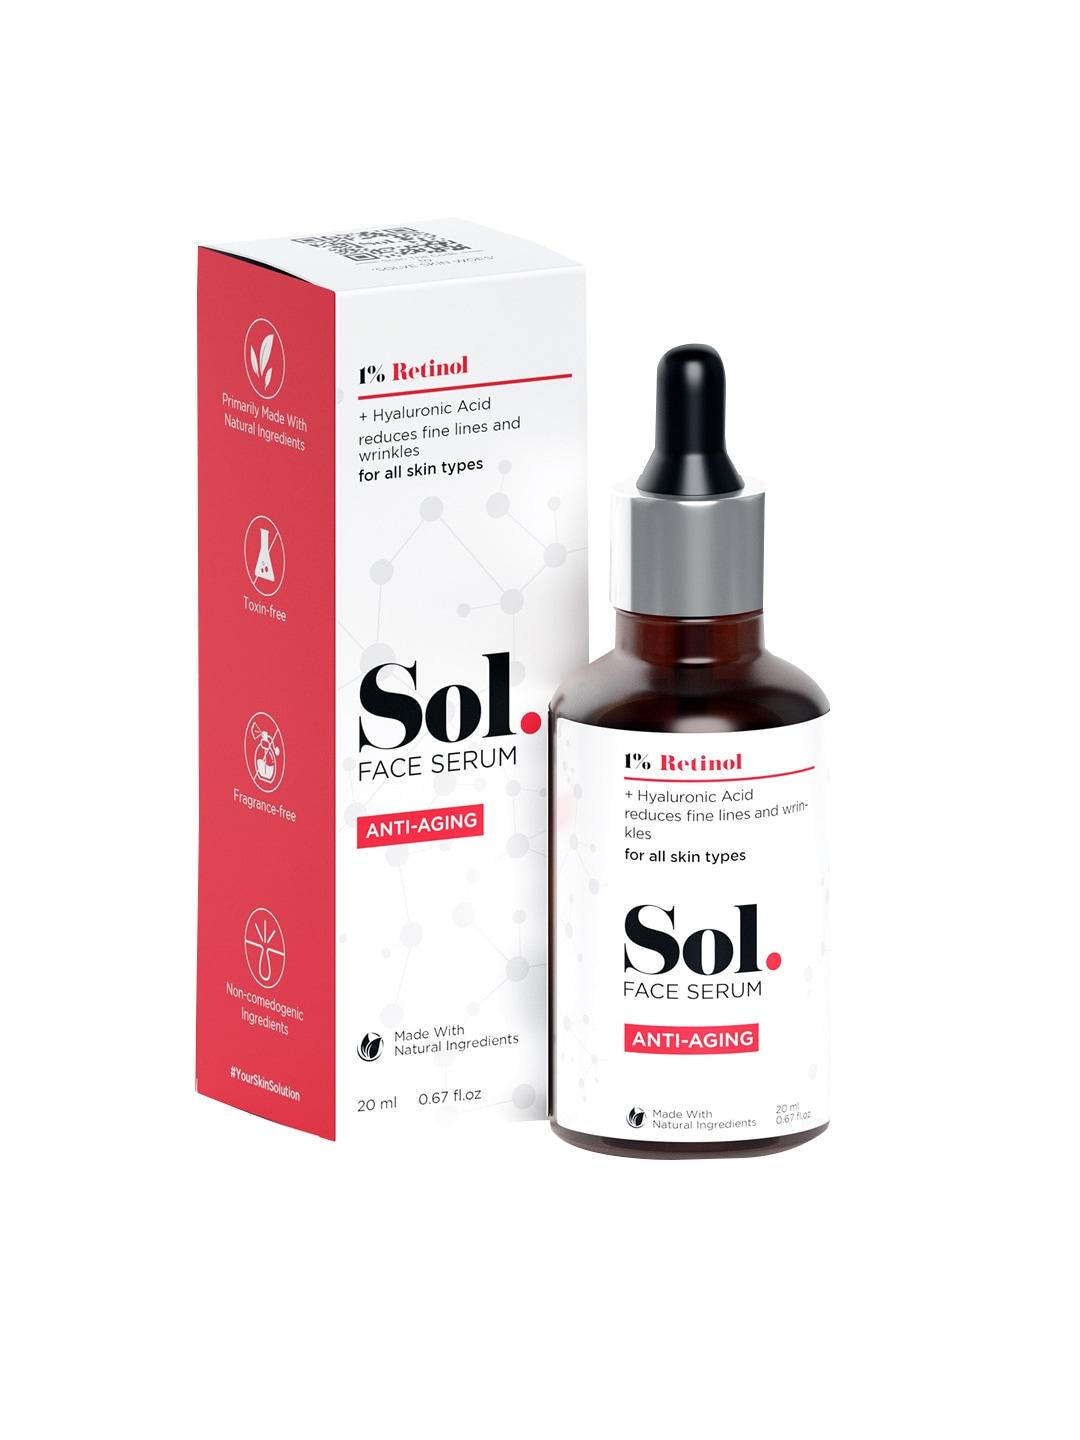 Sol. 1% Retinol Hyaluronic Acid Base Anti-Aging Face Serum - 20ml